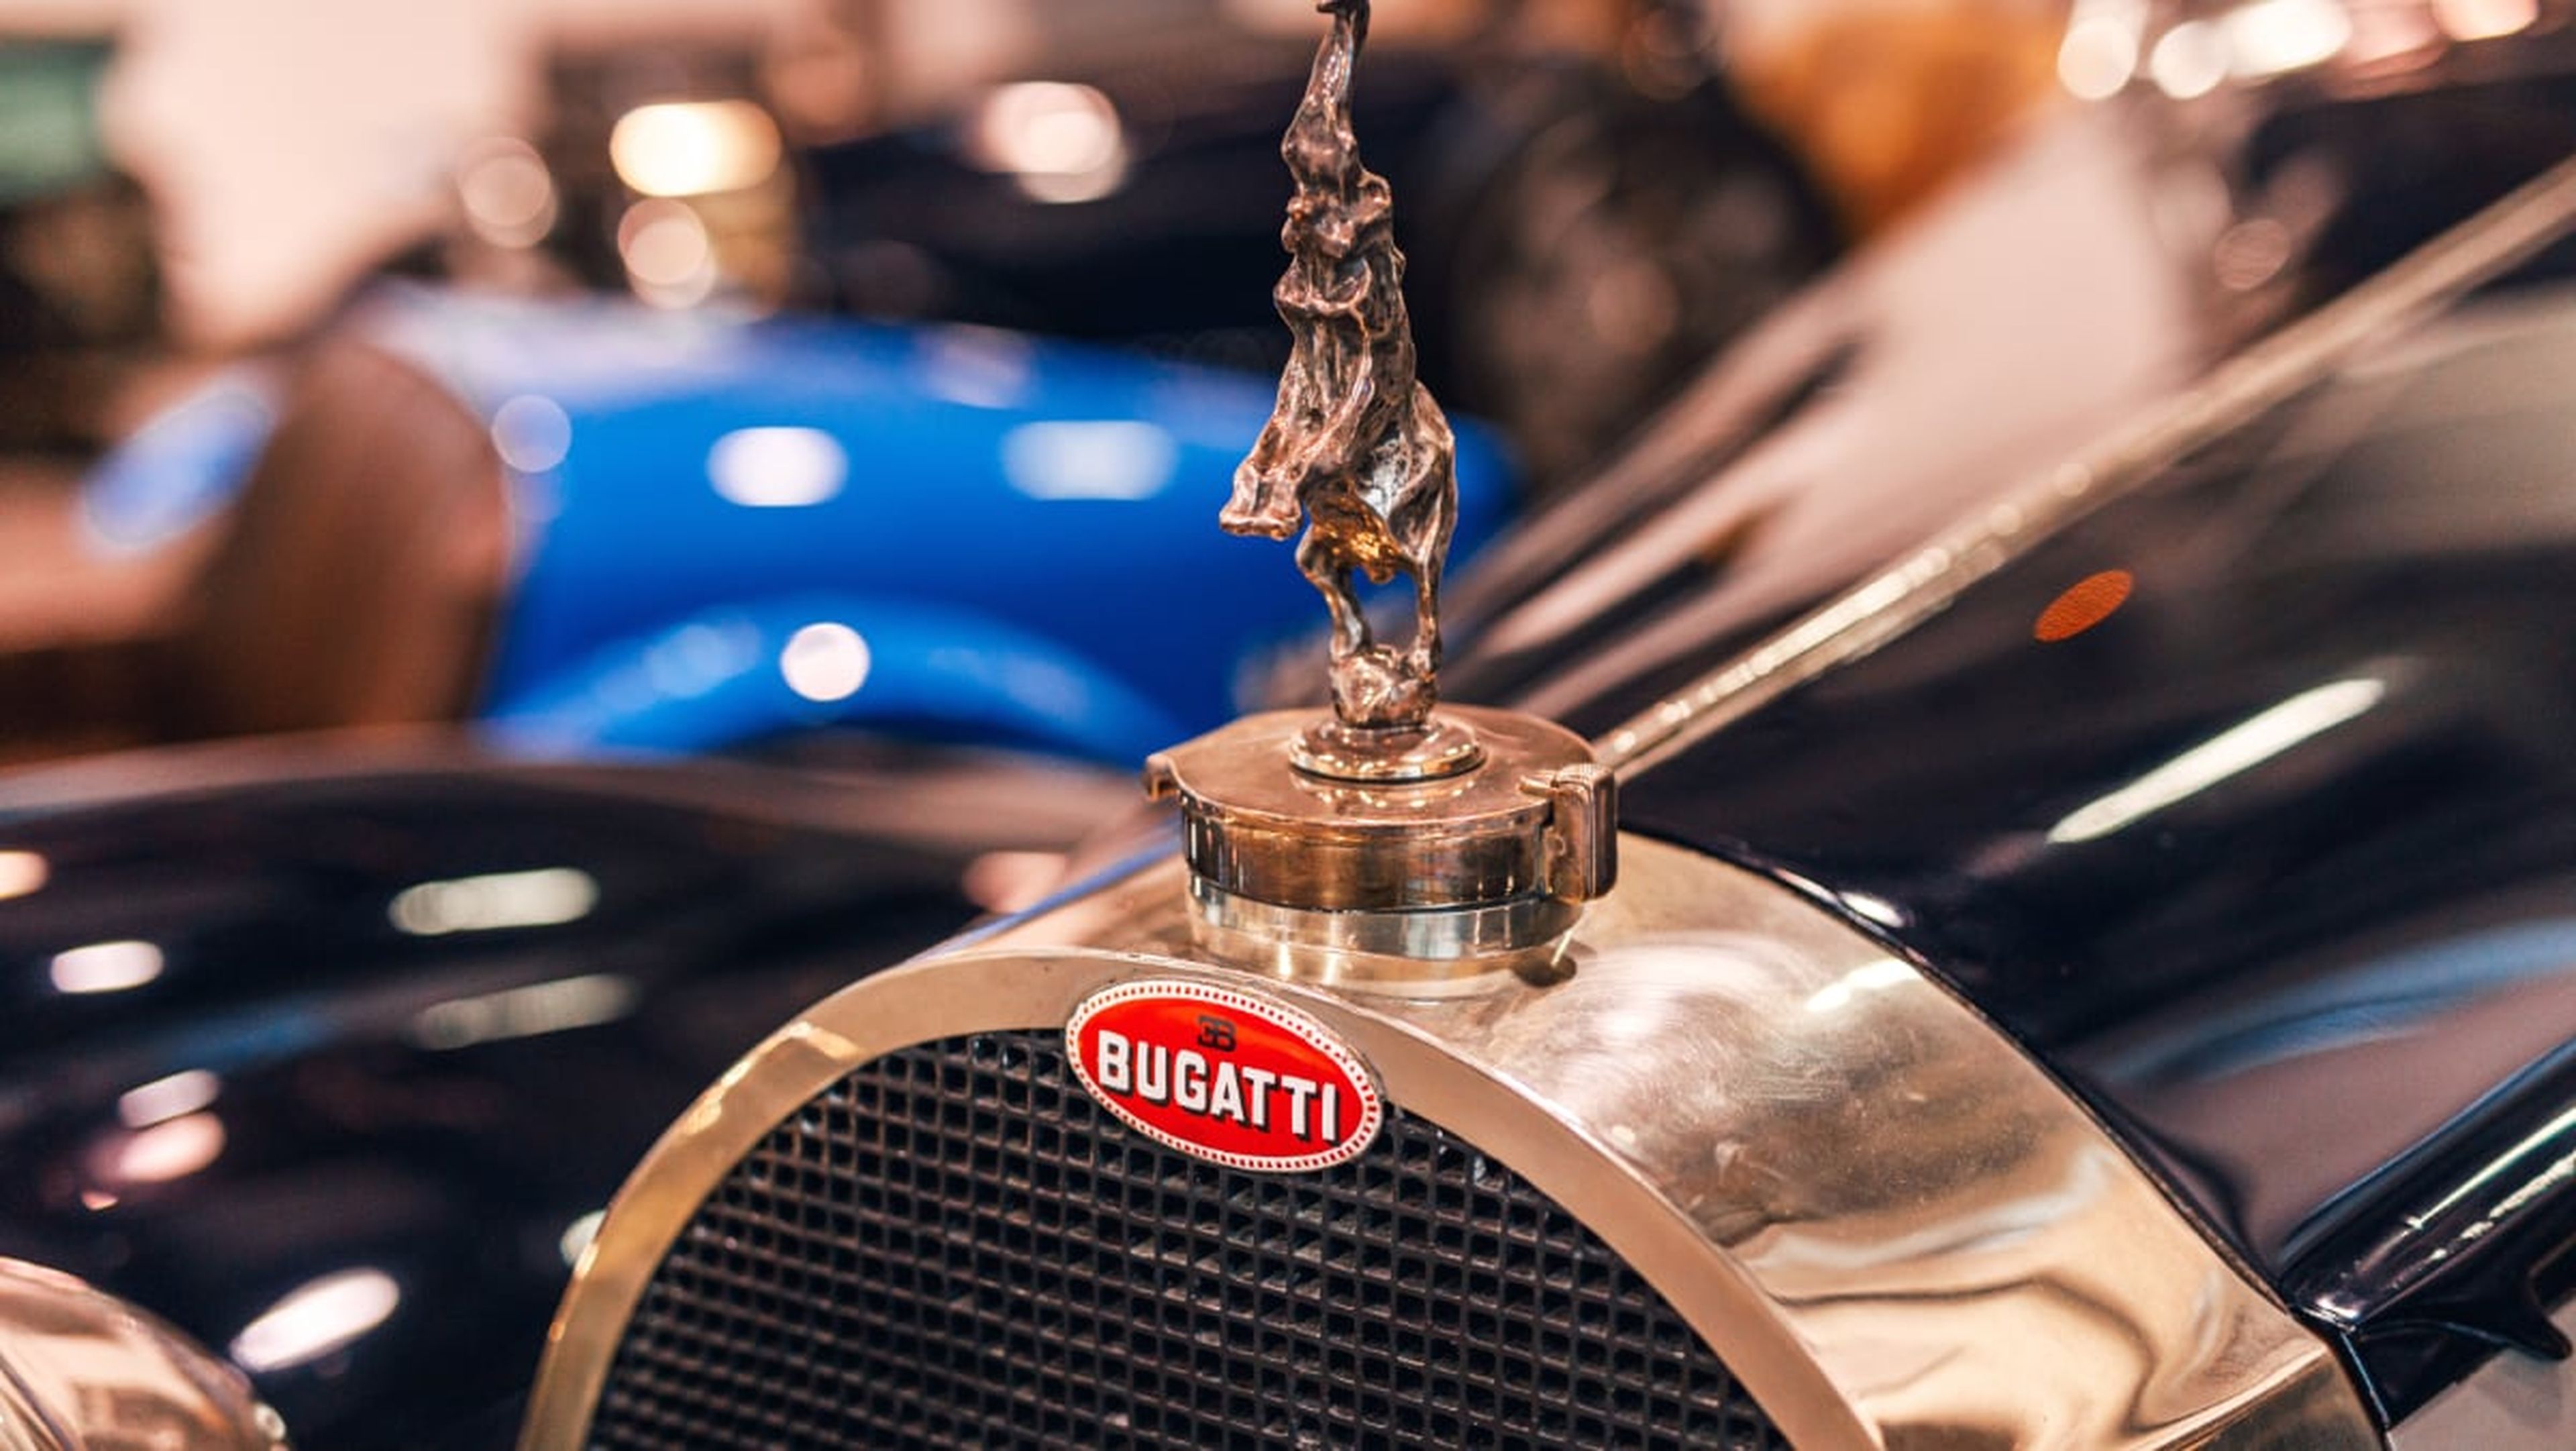 Macaron Bugatti